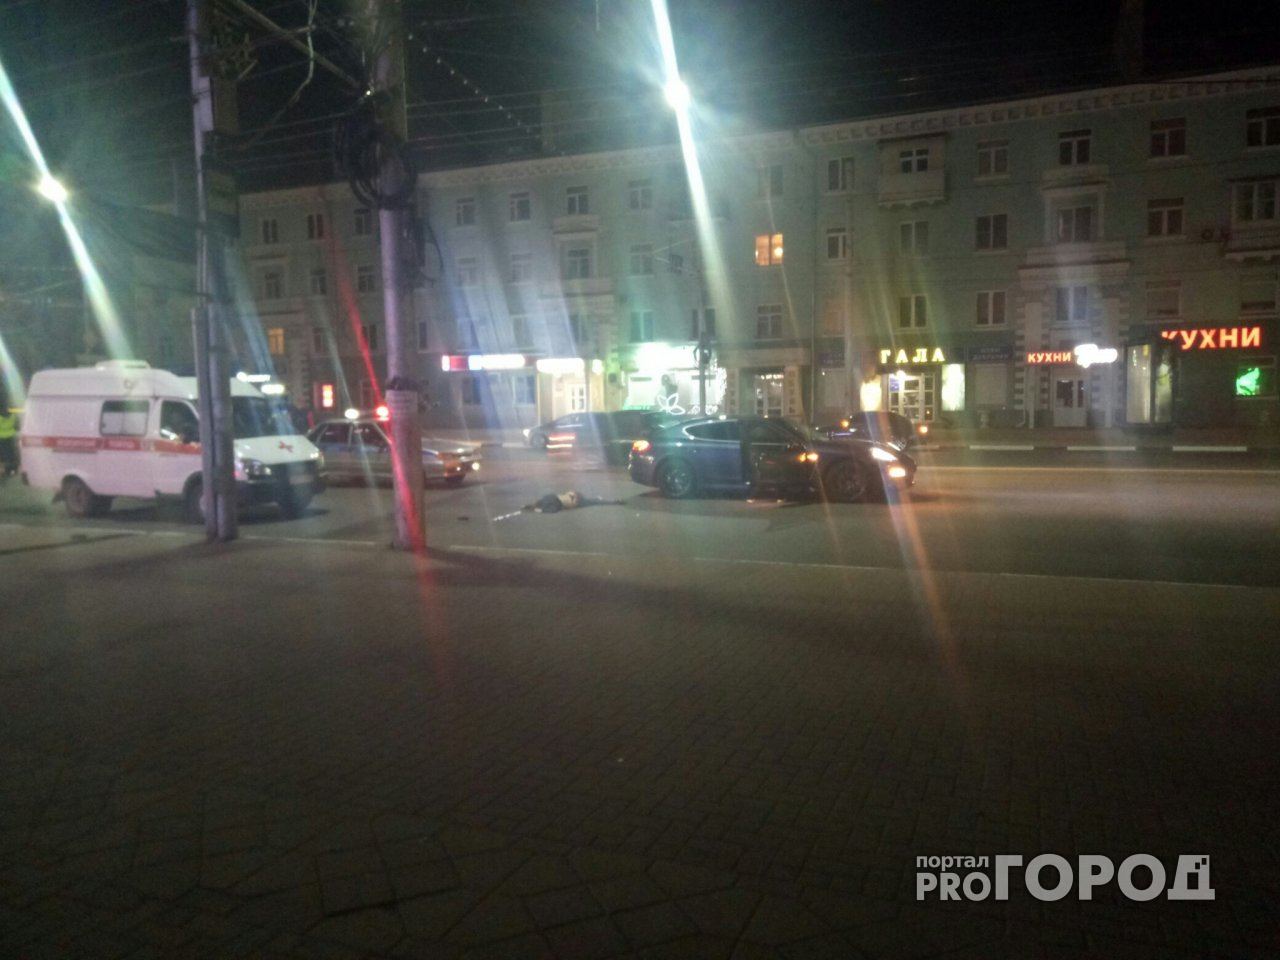 Страшное ДТП в центре Рязани - Porsche насмерть сбил молодую девушку